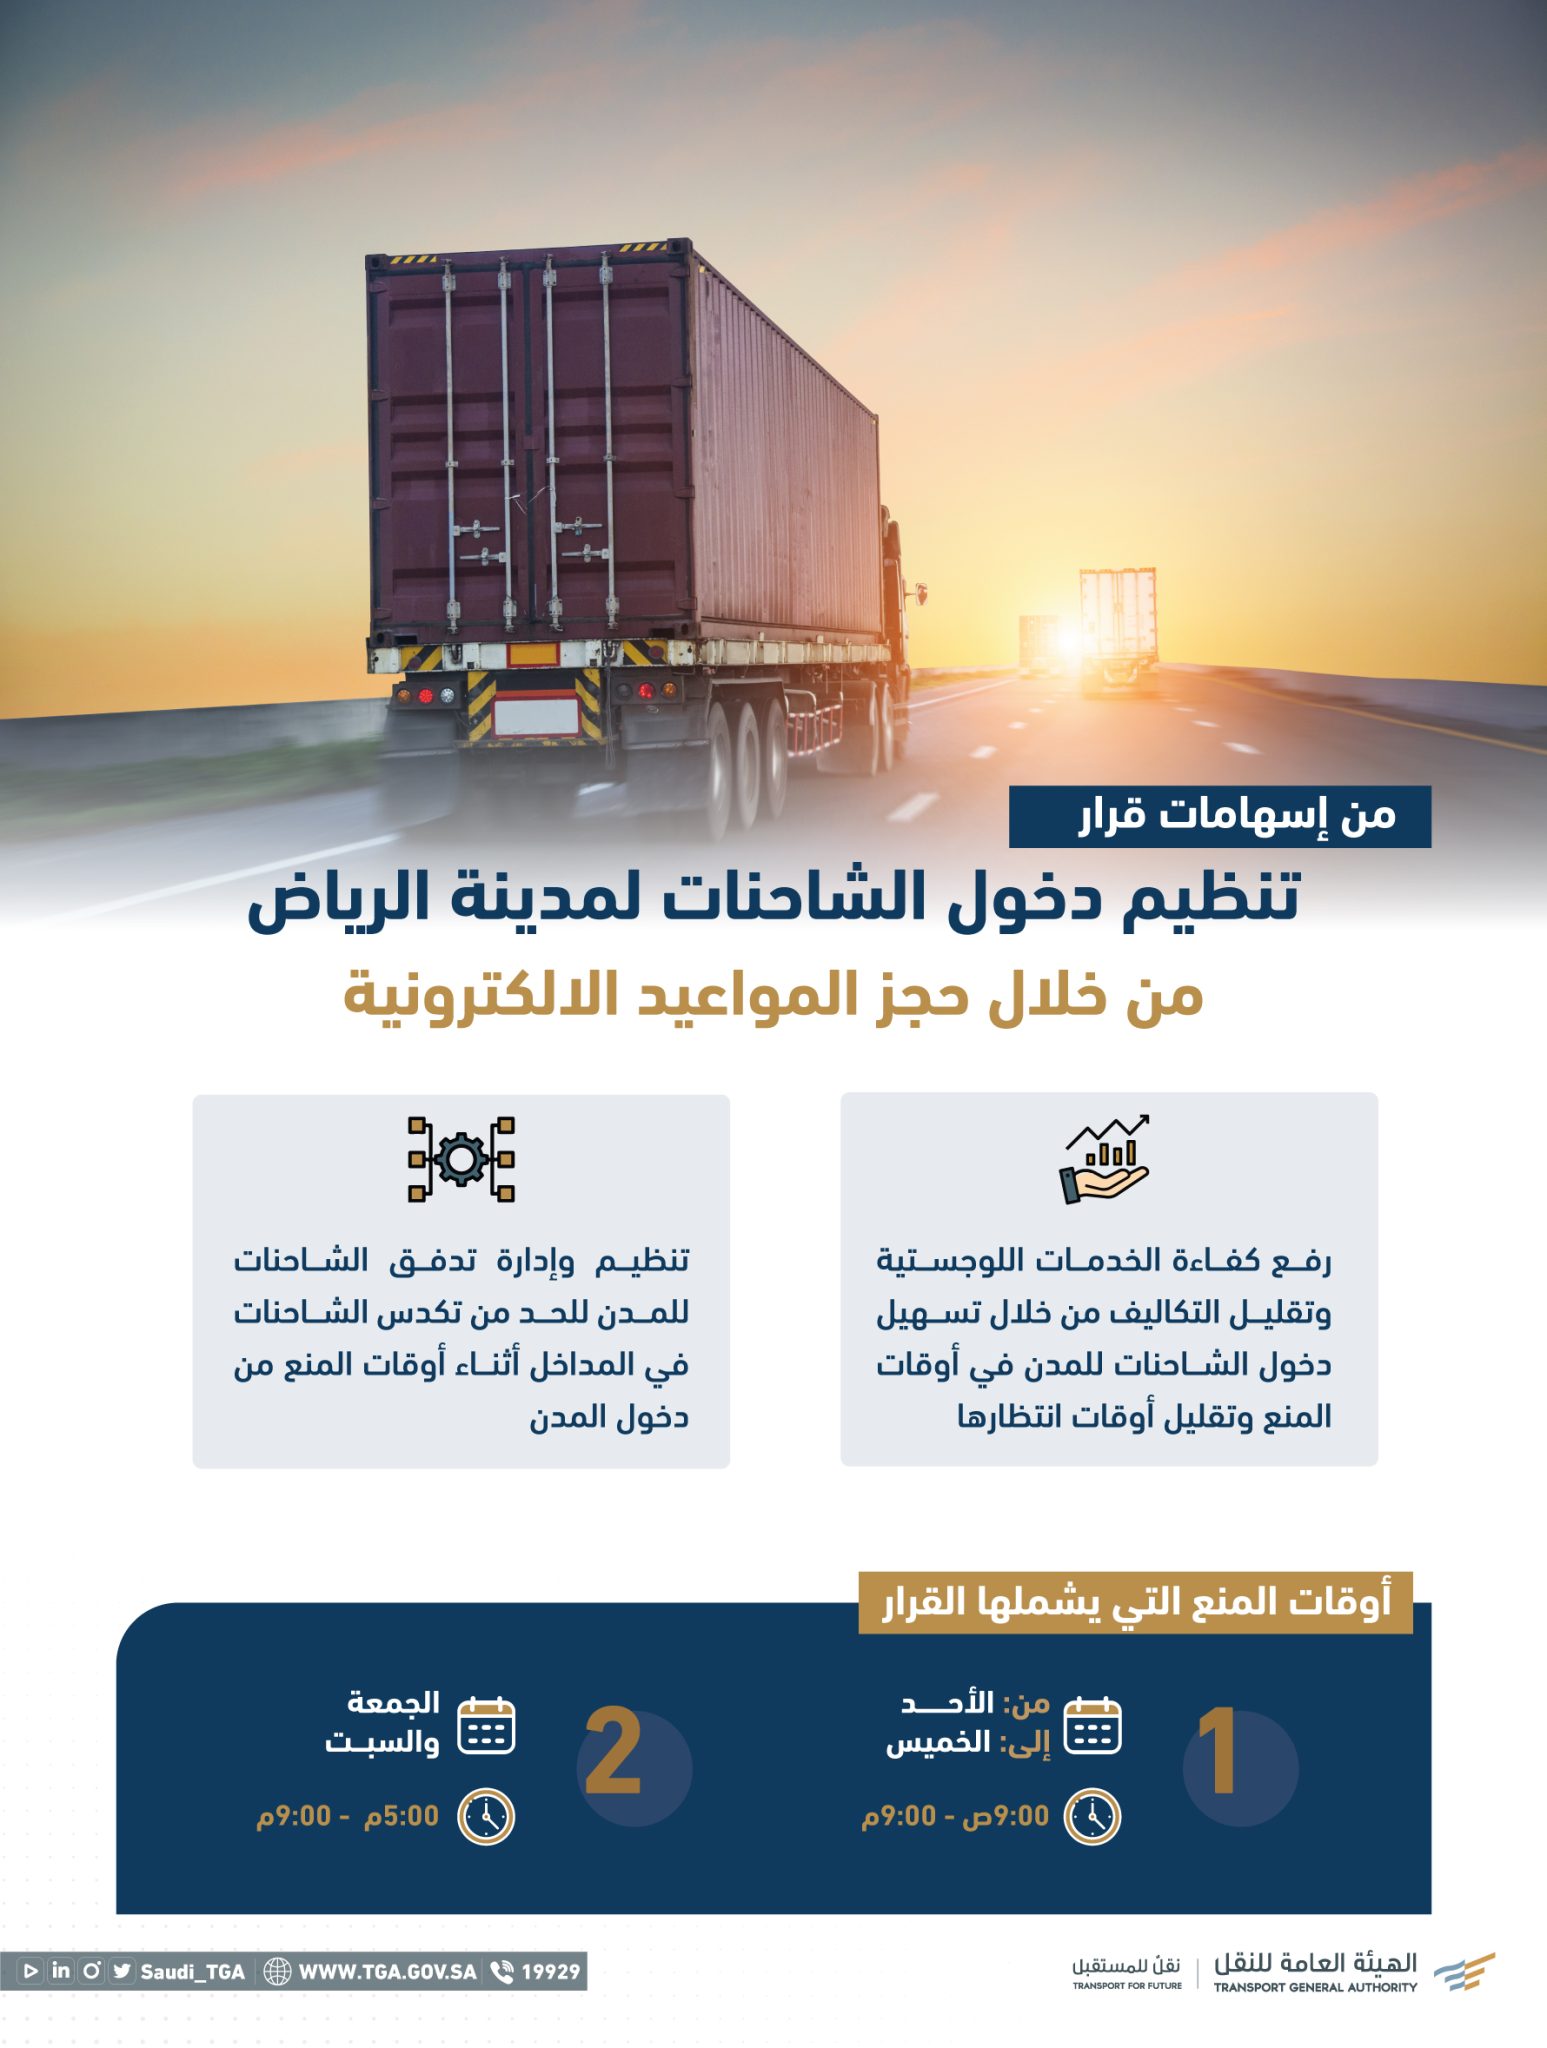 رابط حجز موعد دخول الشاحنات الرياض والمدن المختلفة 1444 وما هي أوقات منع الدخول